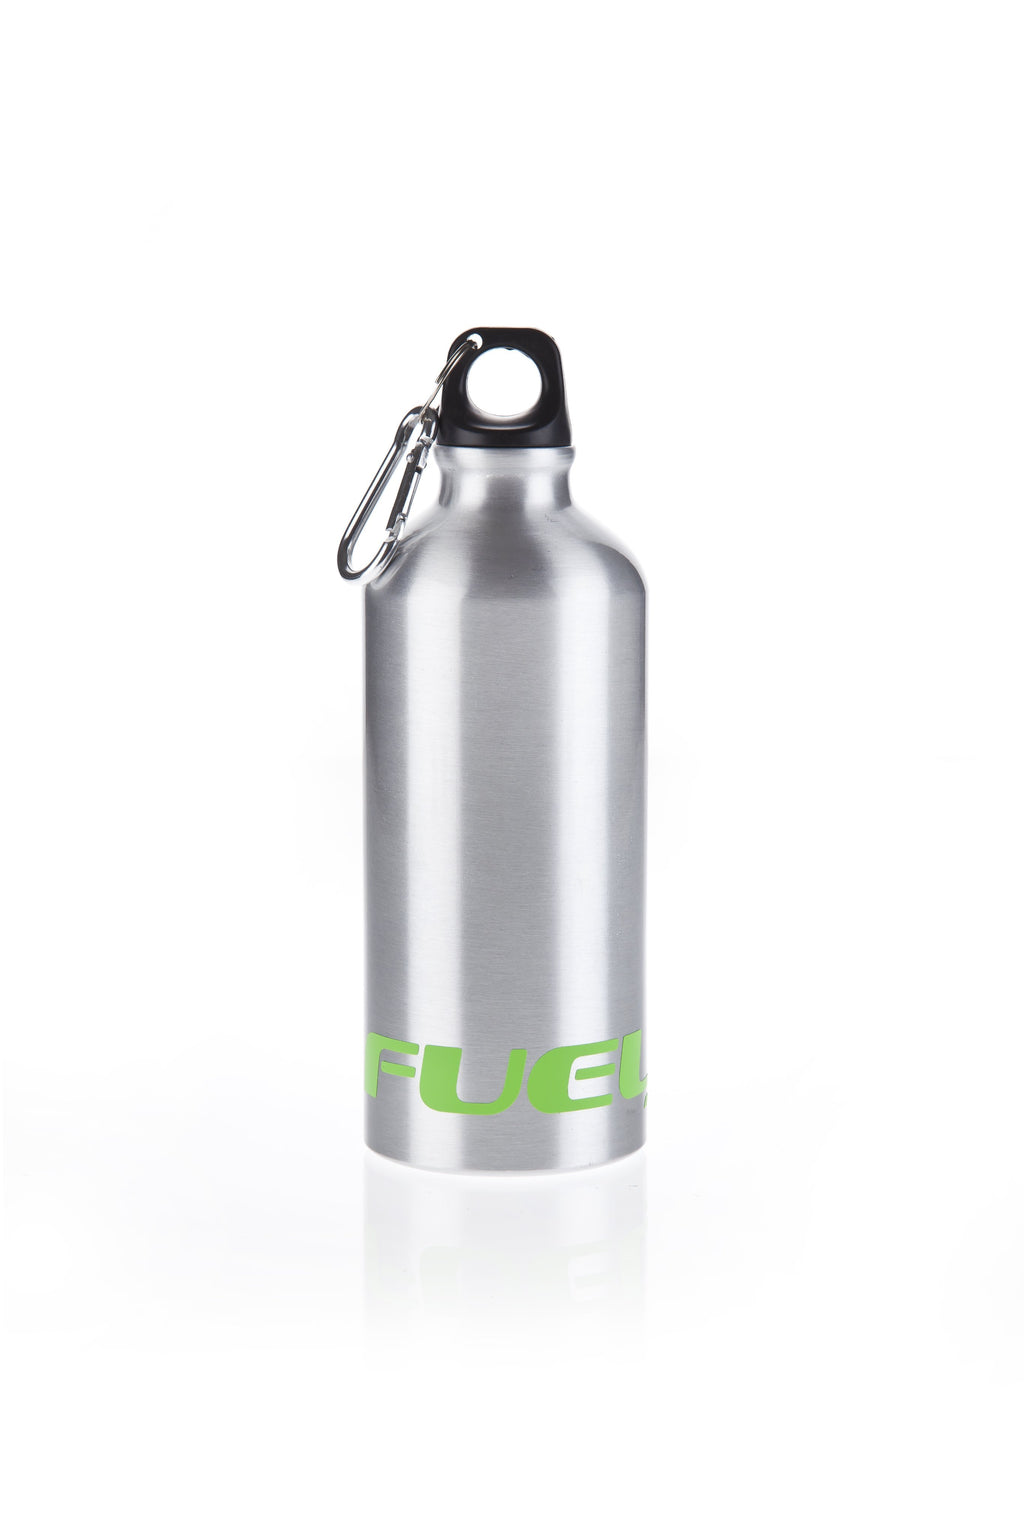 Fuel Steel Water Bottle